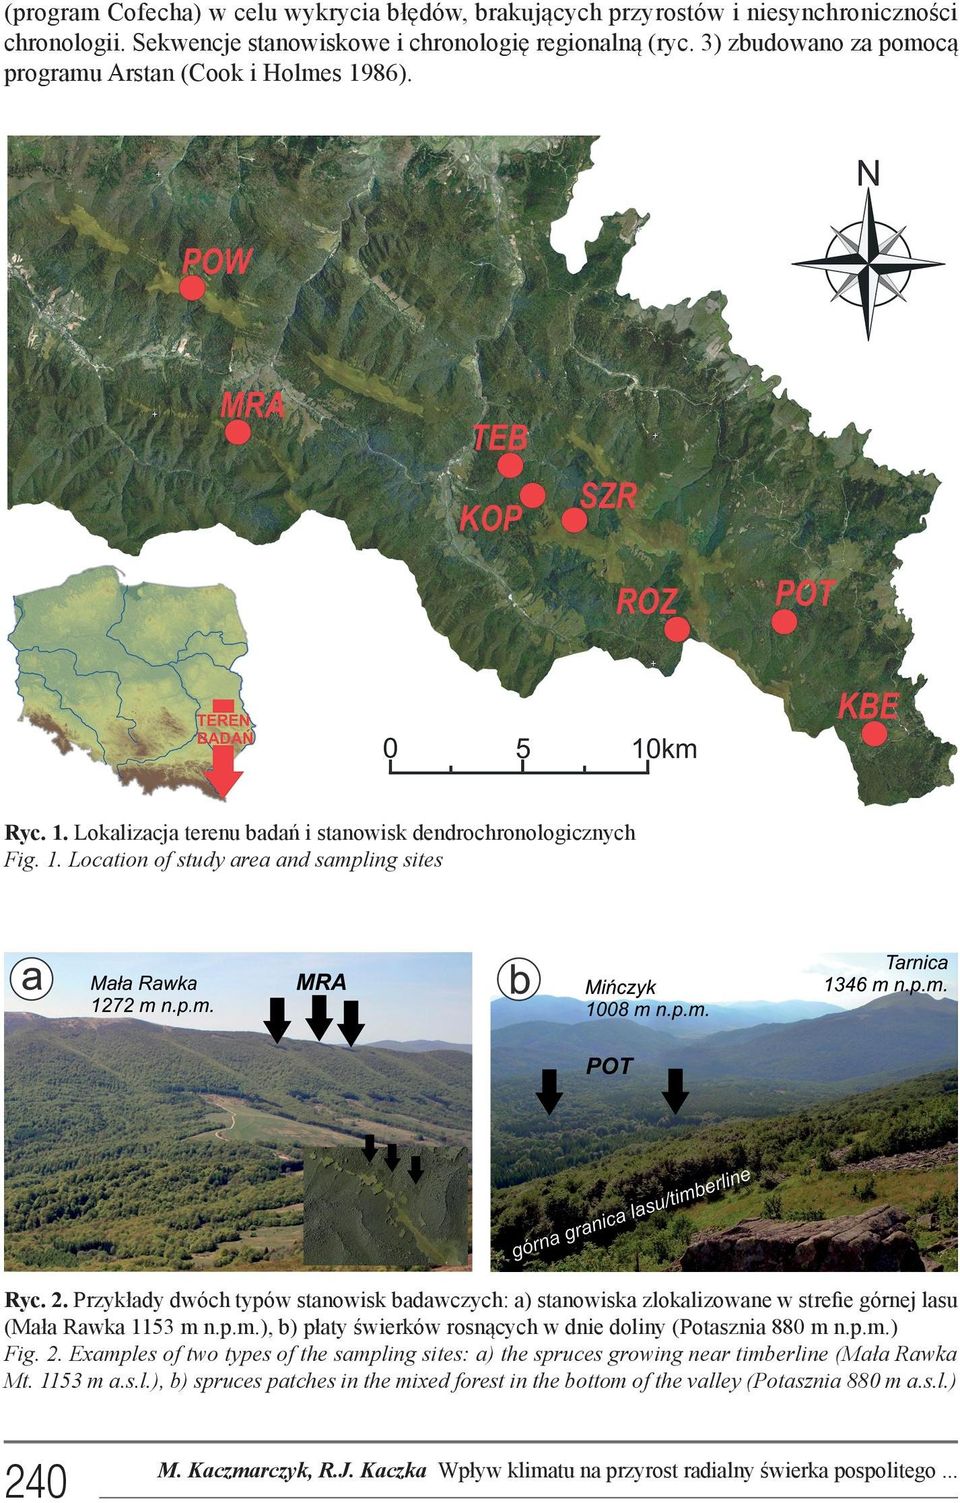 Przykłady dwóch typów stanowisk badawczych: a) stanowiska zlokalizowane w strefie górnej lasu (Mała Rawka 1153 m n.p.m.), b) płaty świerków rosnących w dnie doliny (Potasznia 880 m n.p.m.) Fig.